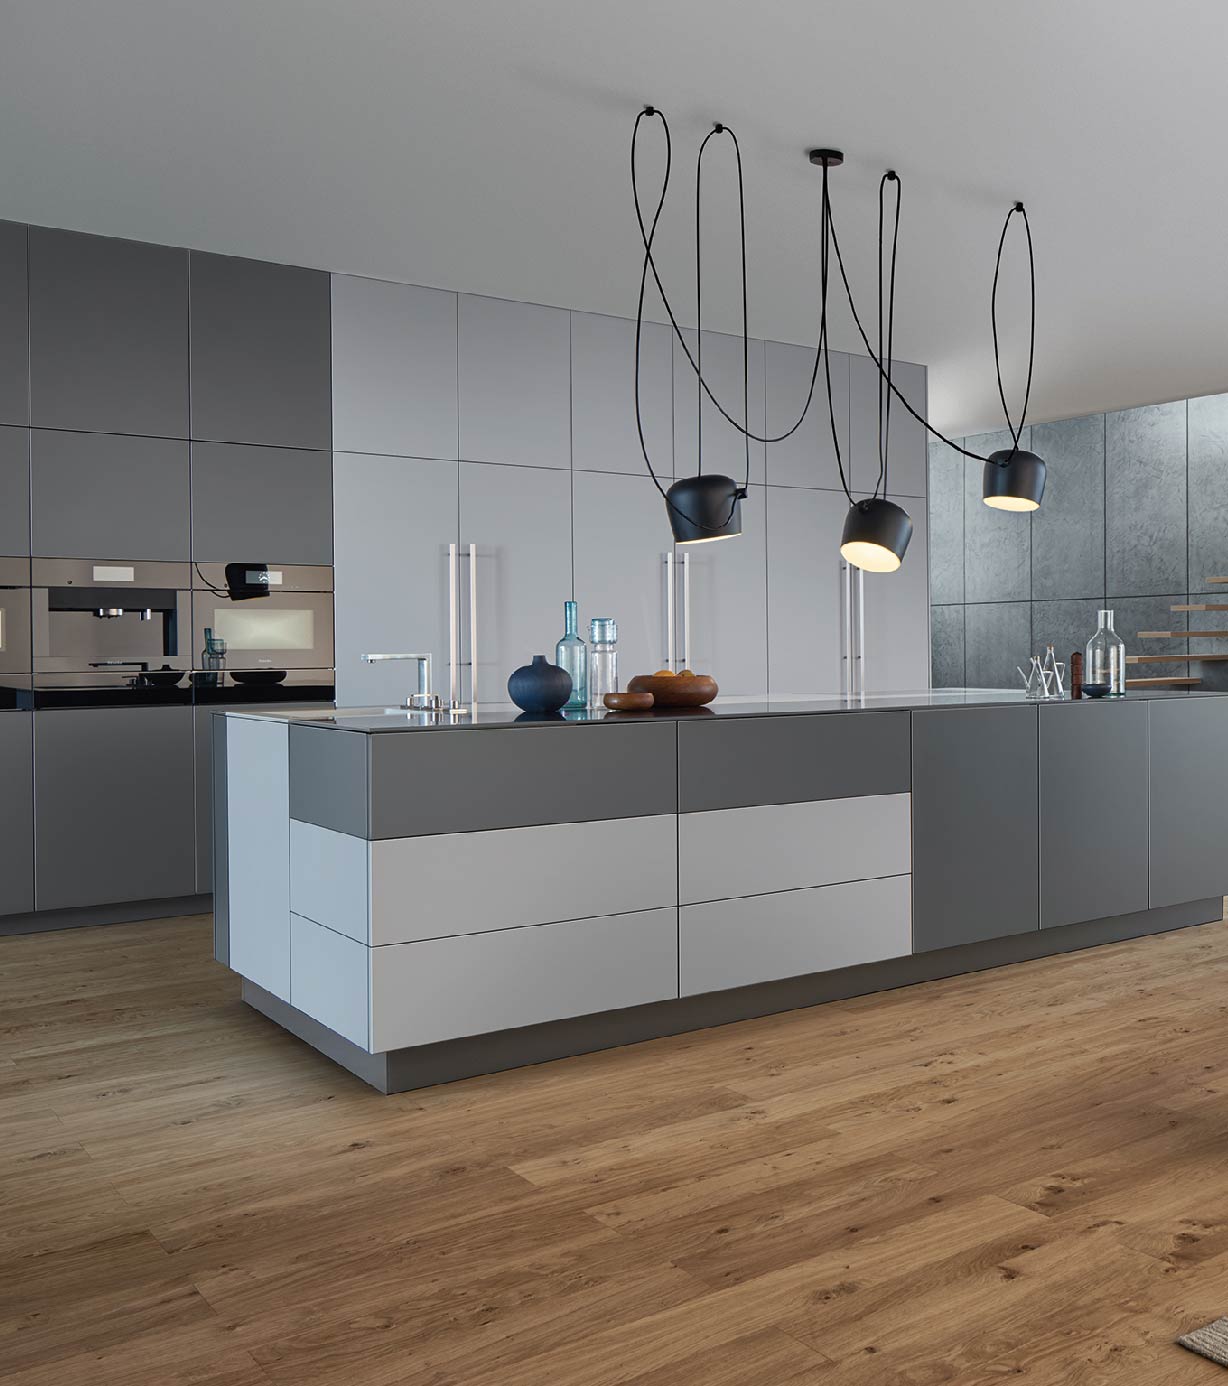 minimalistische Kücheneinrichtung